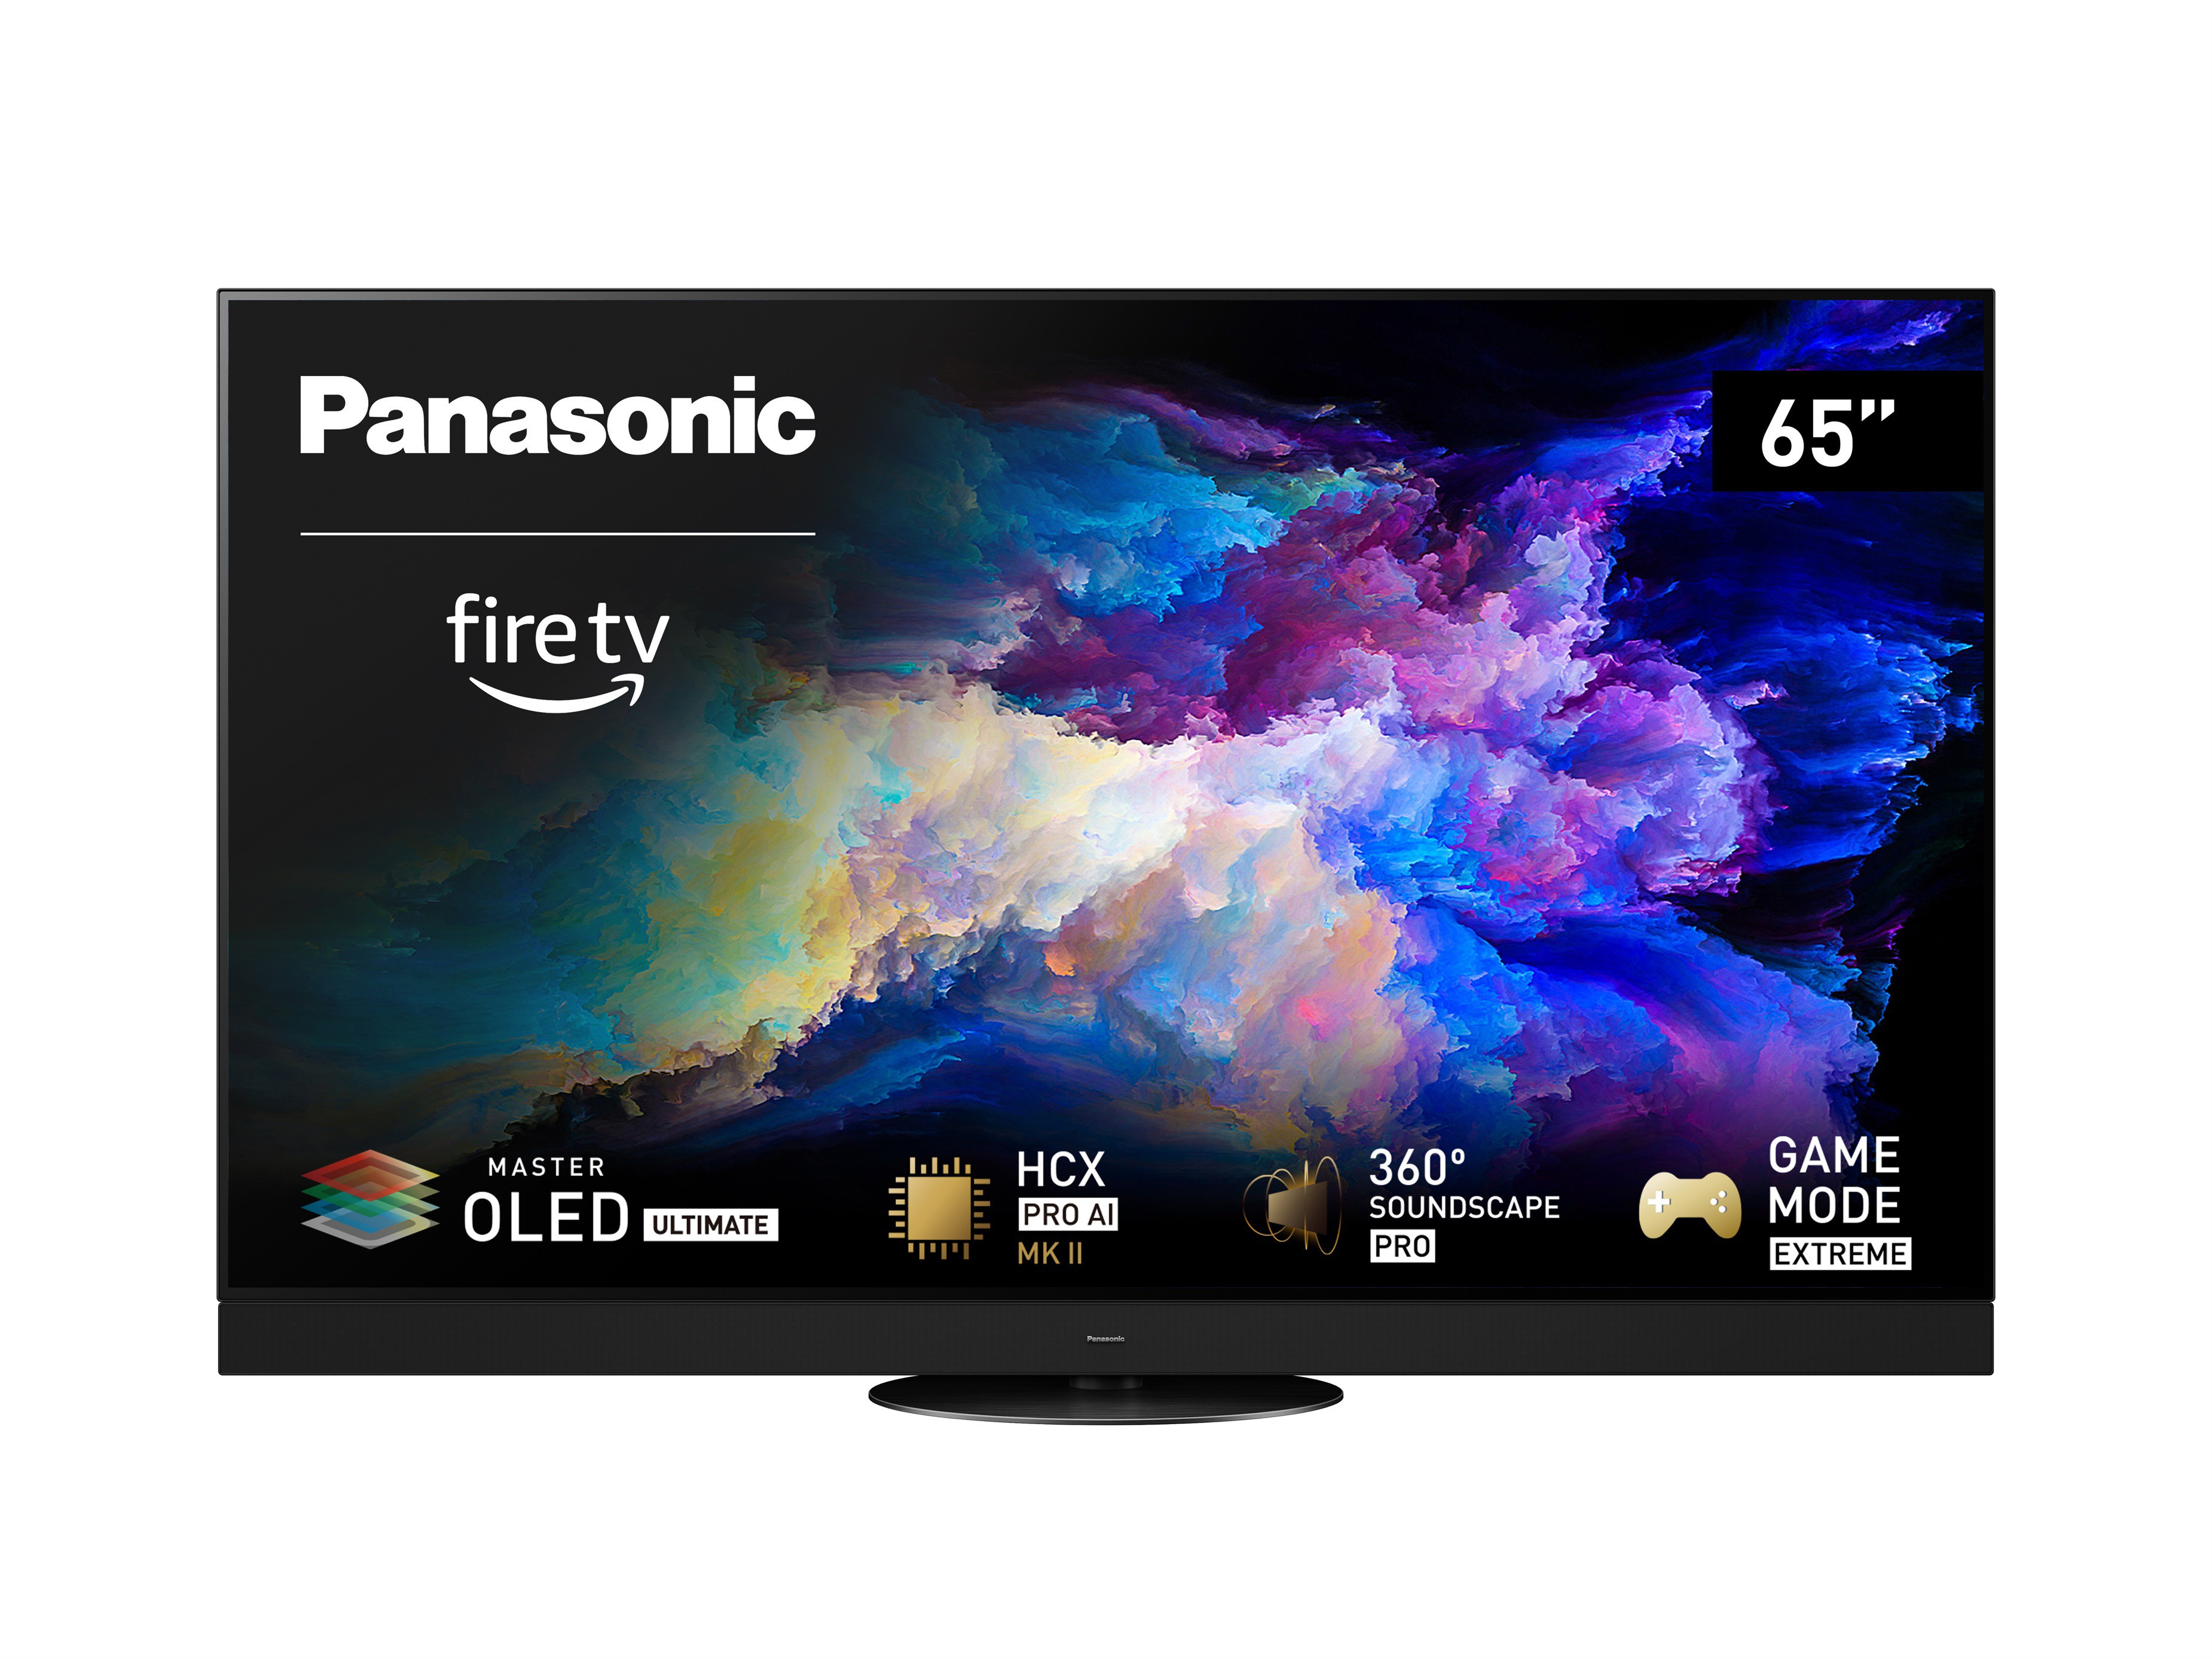 I nuovi televisori OLED Z95 e Z93 di Panasonic integrano Fire TV e miglioramenti delle immagini con il chip HCX PRO AI MK II